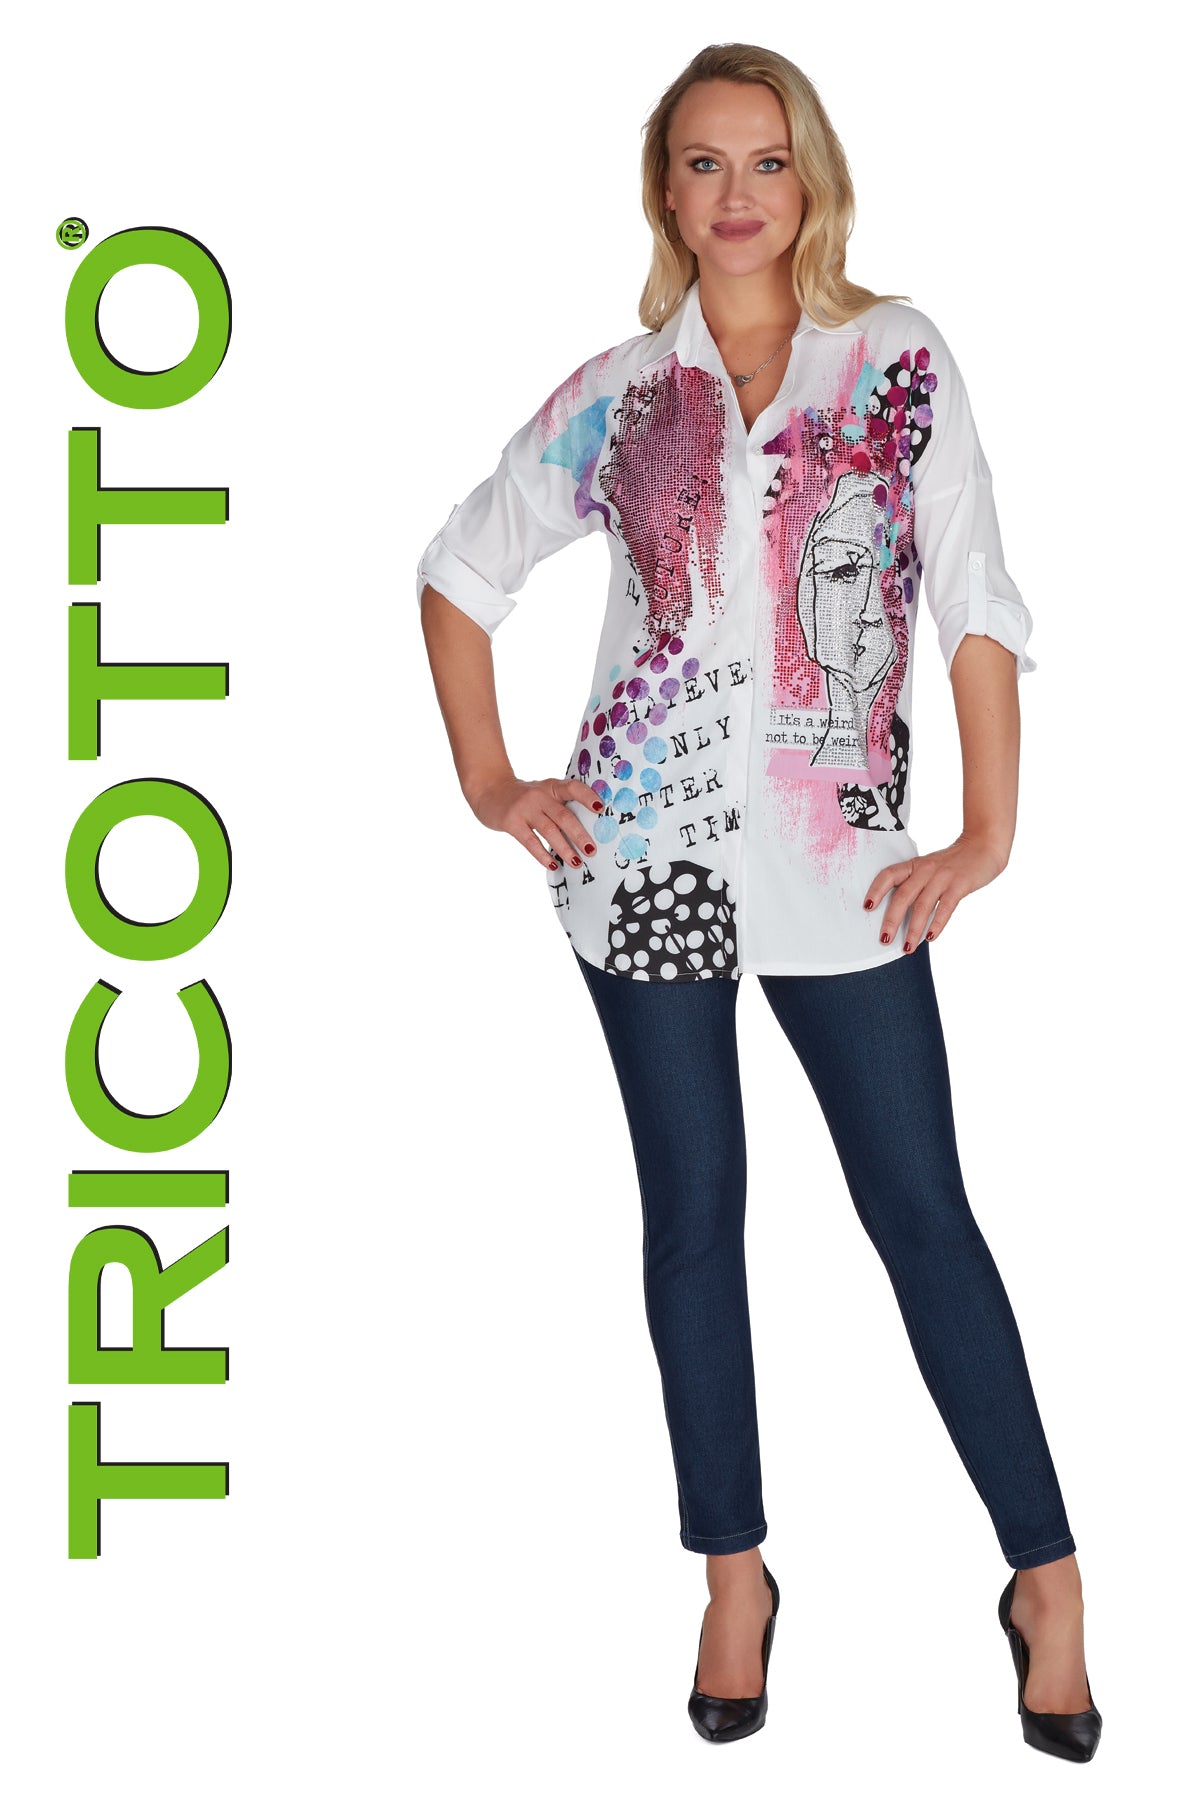 Tricotto Products - Vita Boutique